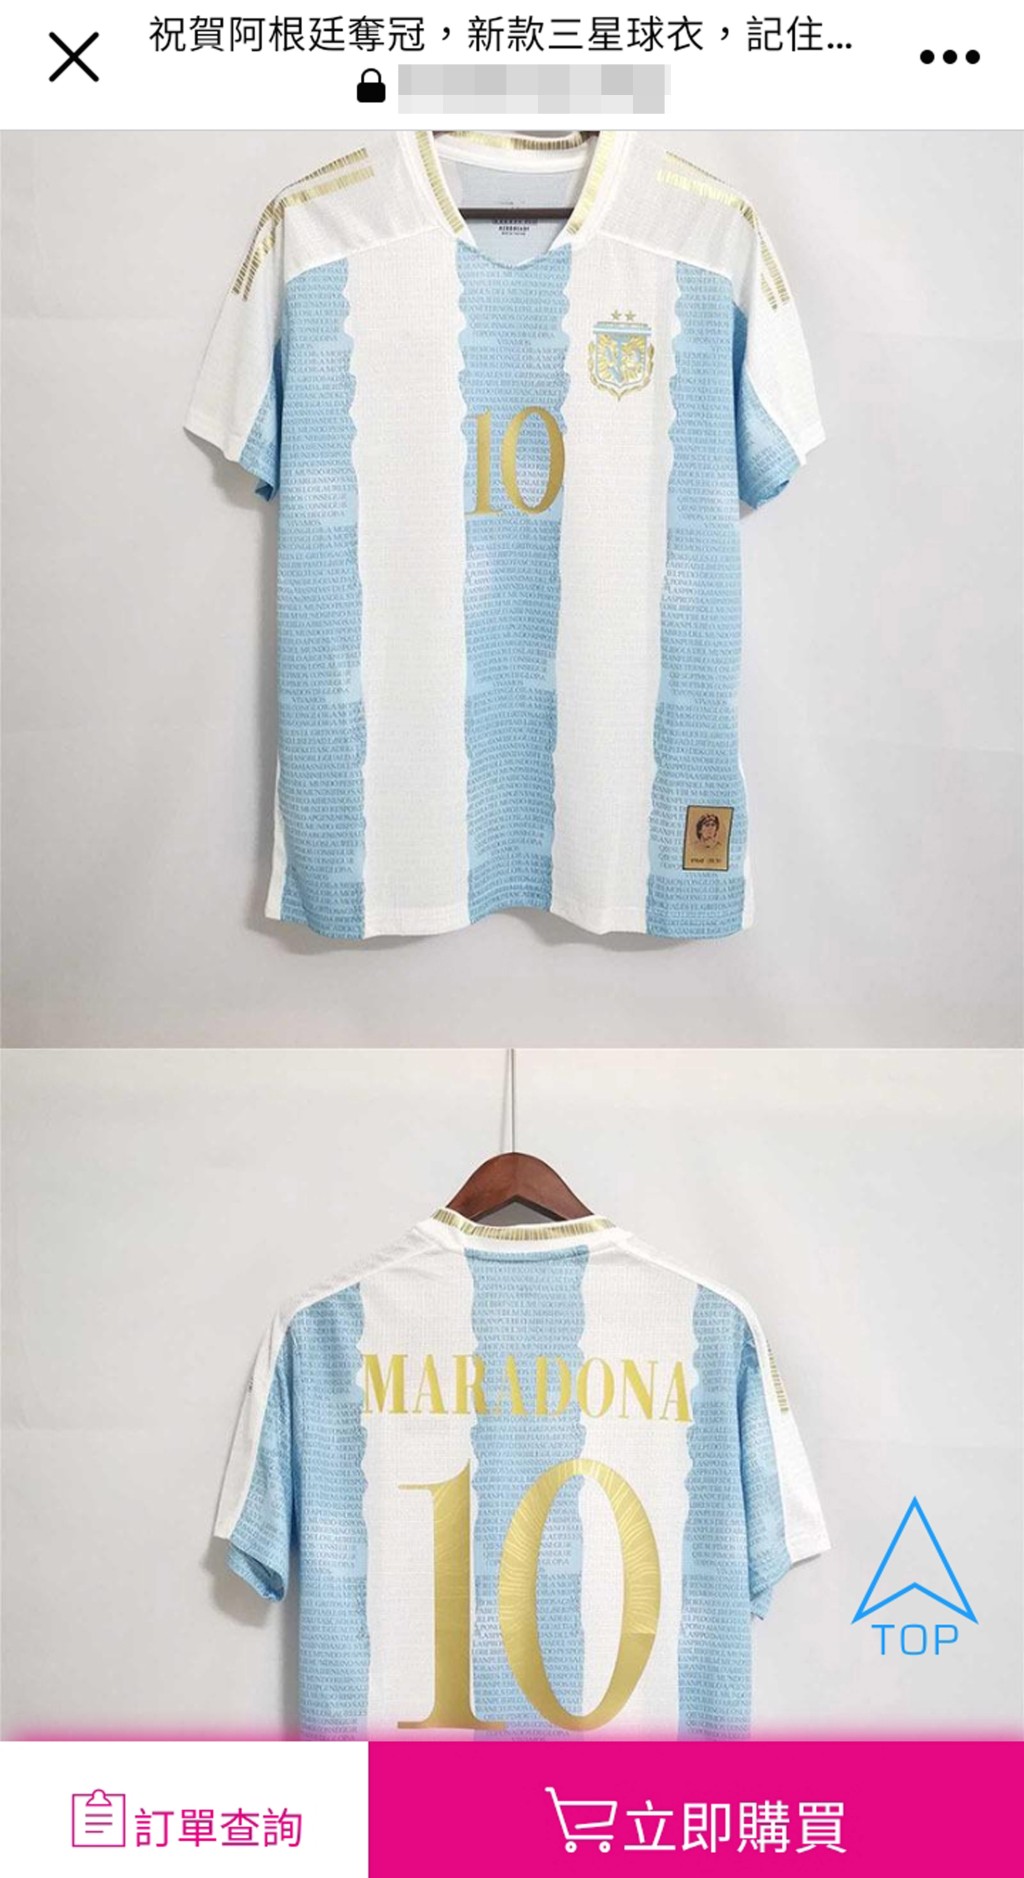 已故阿根廷「球王」馬勒當拿(Maradona)的盜版球衣也有售。 網上圖片